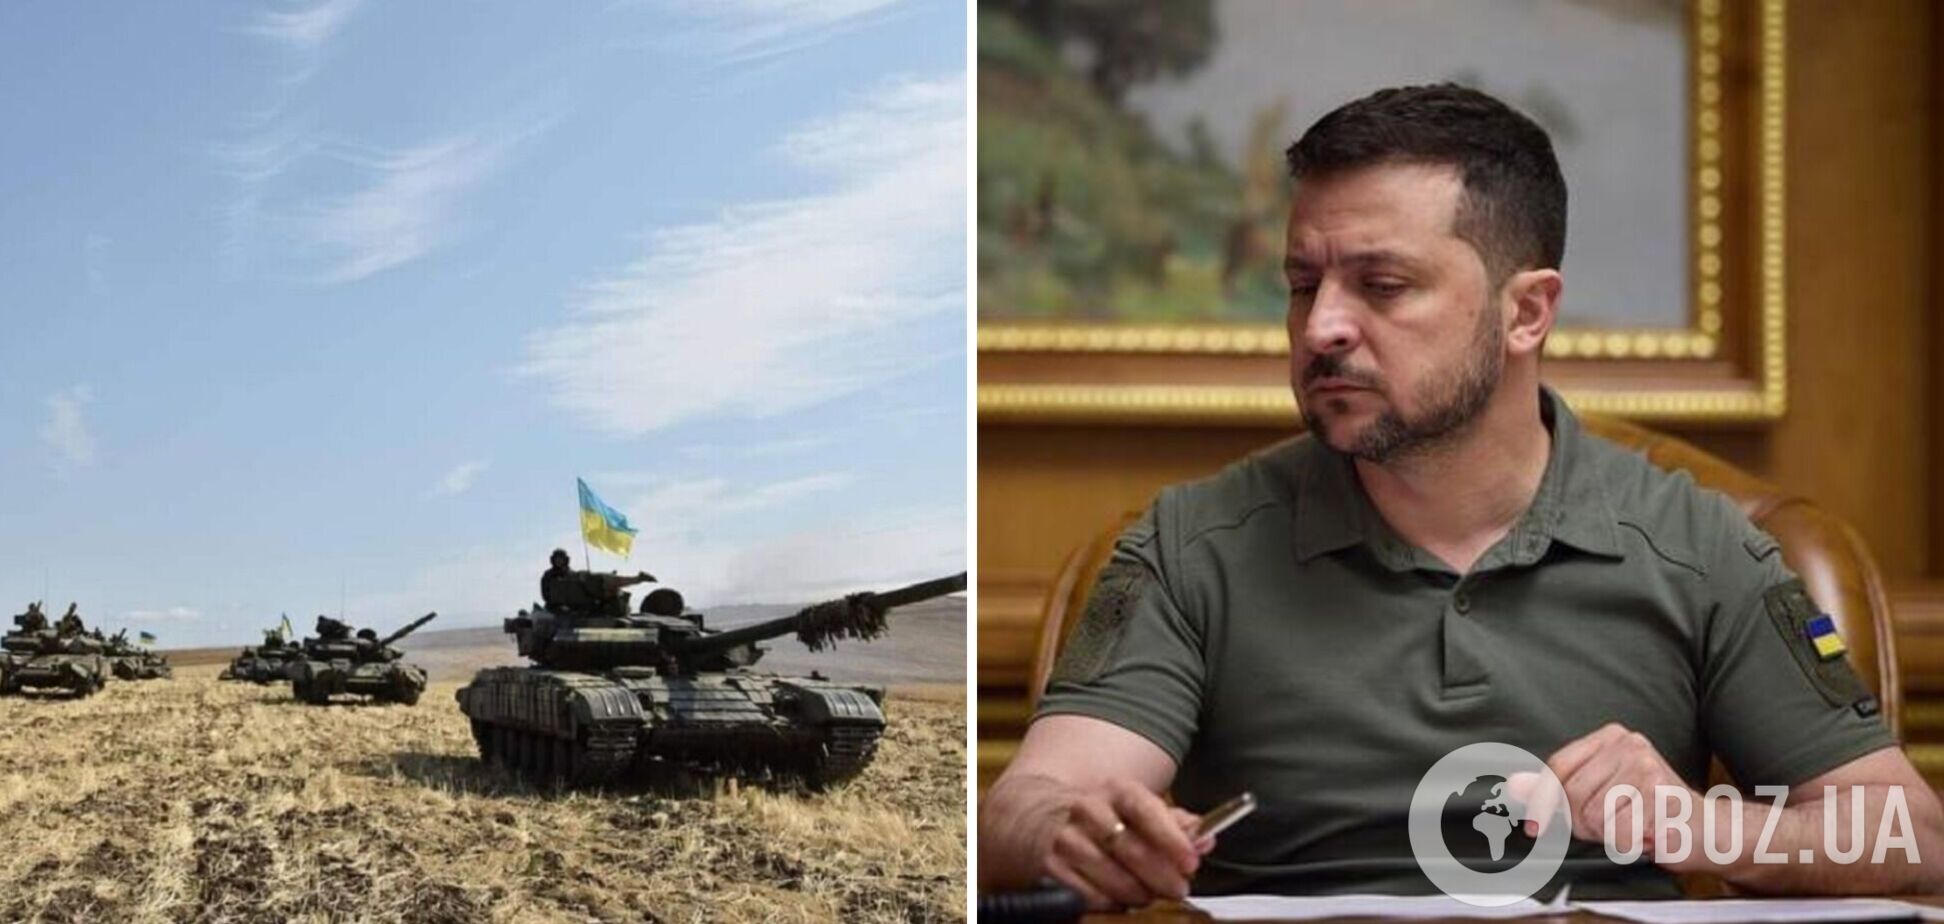 'Украина не воюет на территории РФ': Зеленский категорически отверг идею продвижения ВСУ за границы 1991 года. Видео